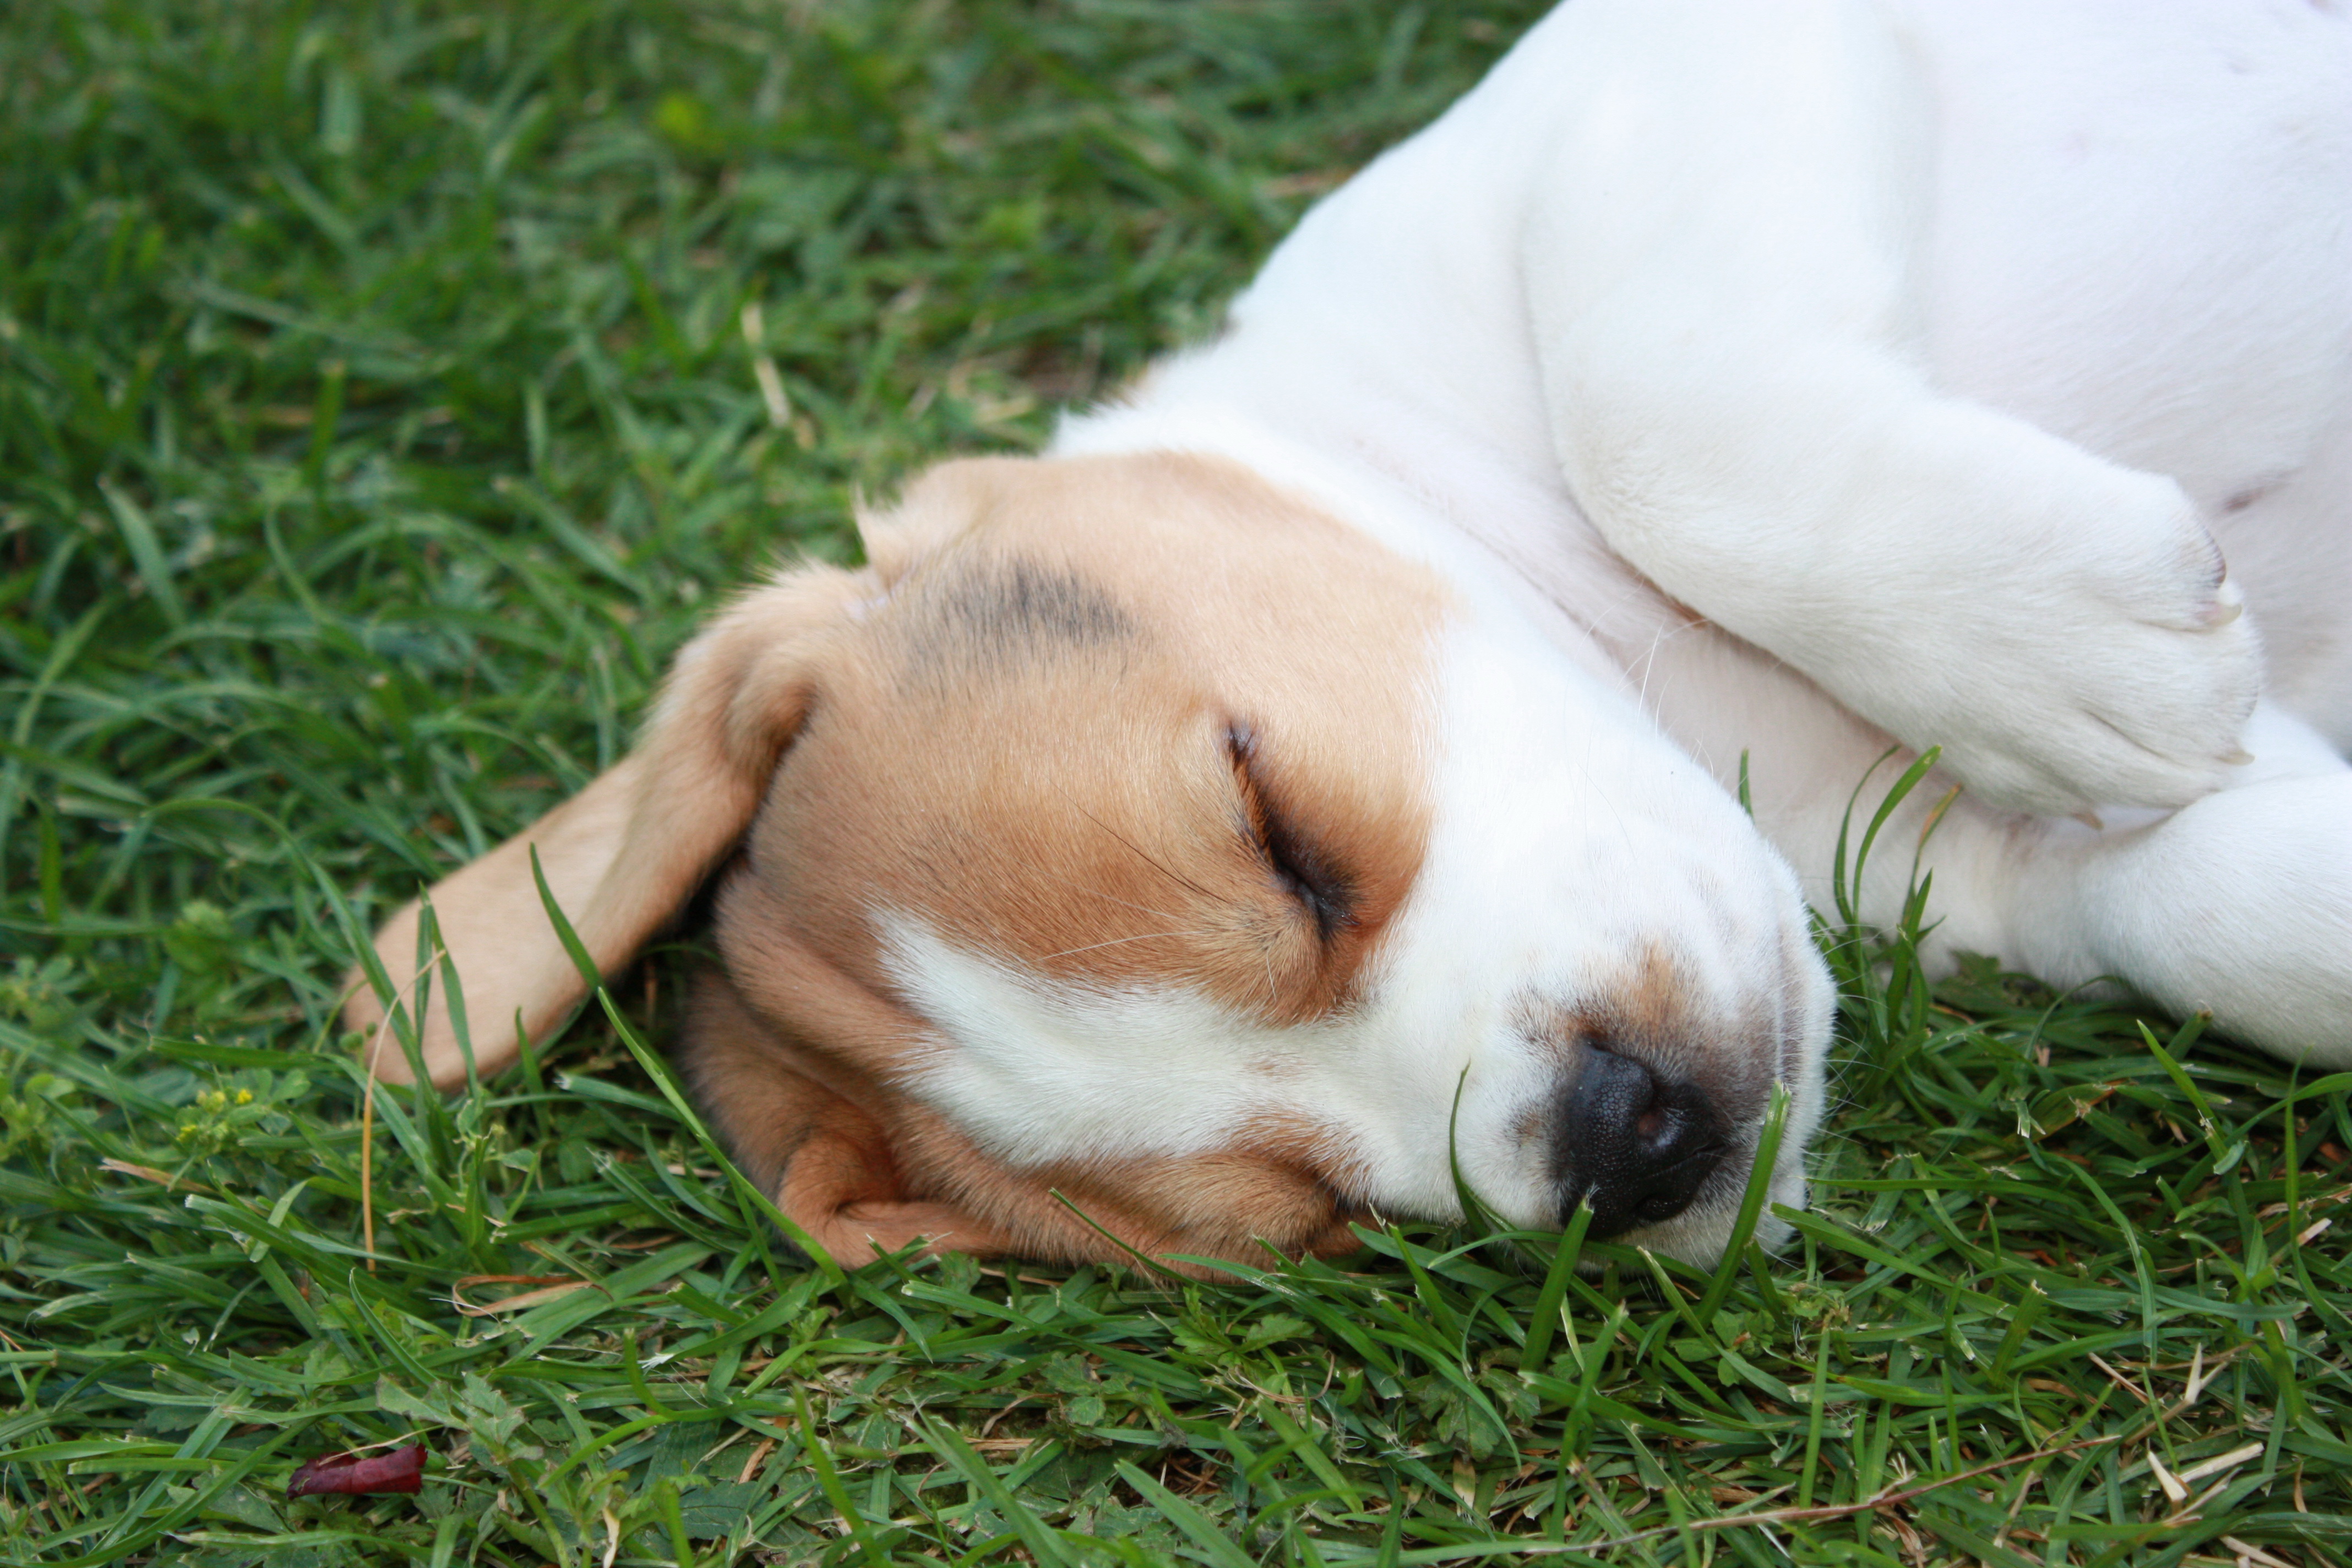 Der Kopf eines Beaglewelpen, der schlafend im Gras liegt